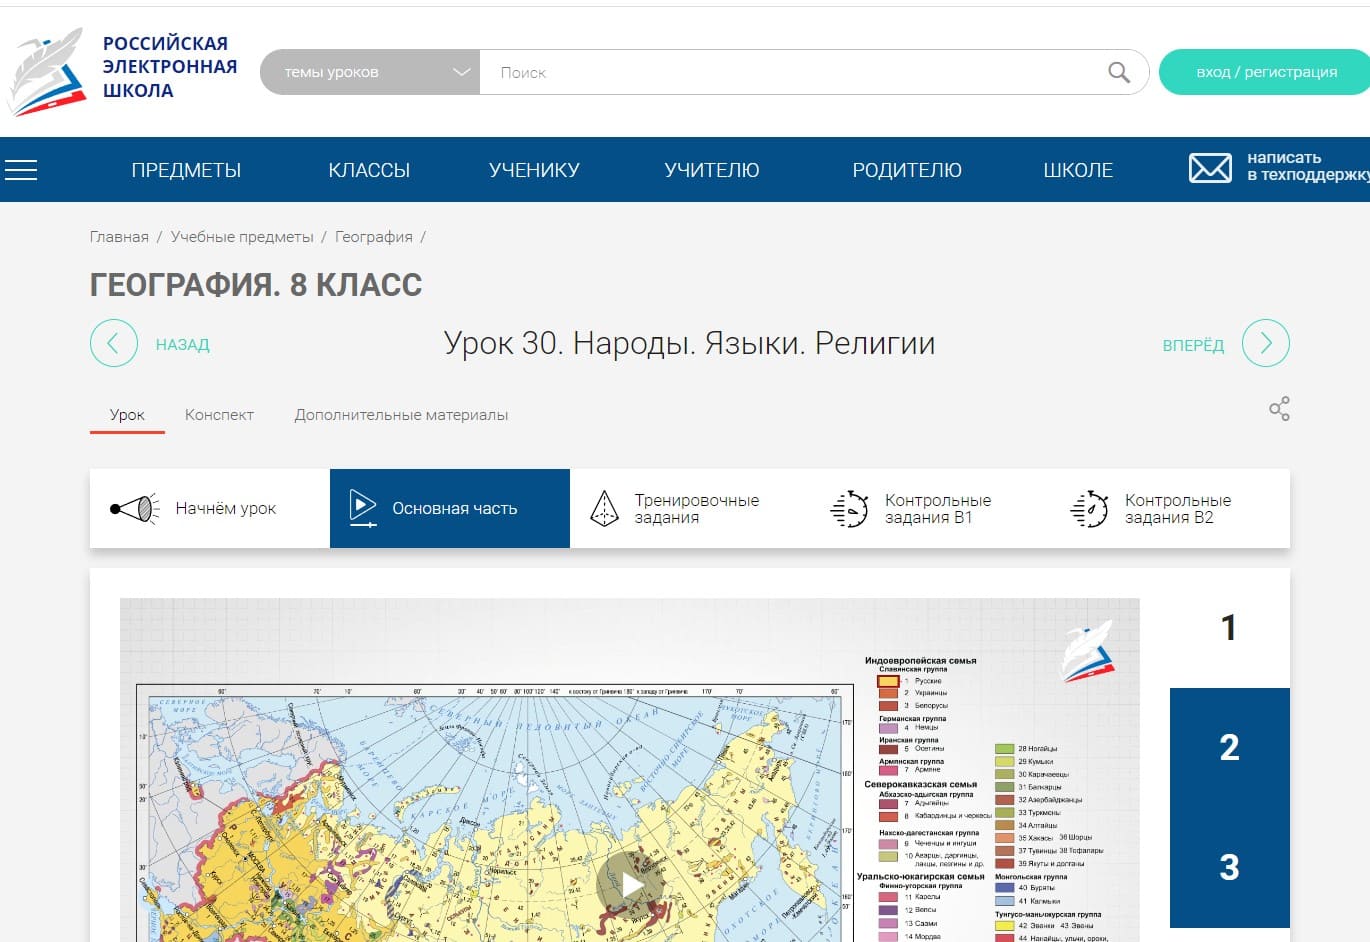 Уроки географии на сайте Российской электронной школы